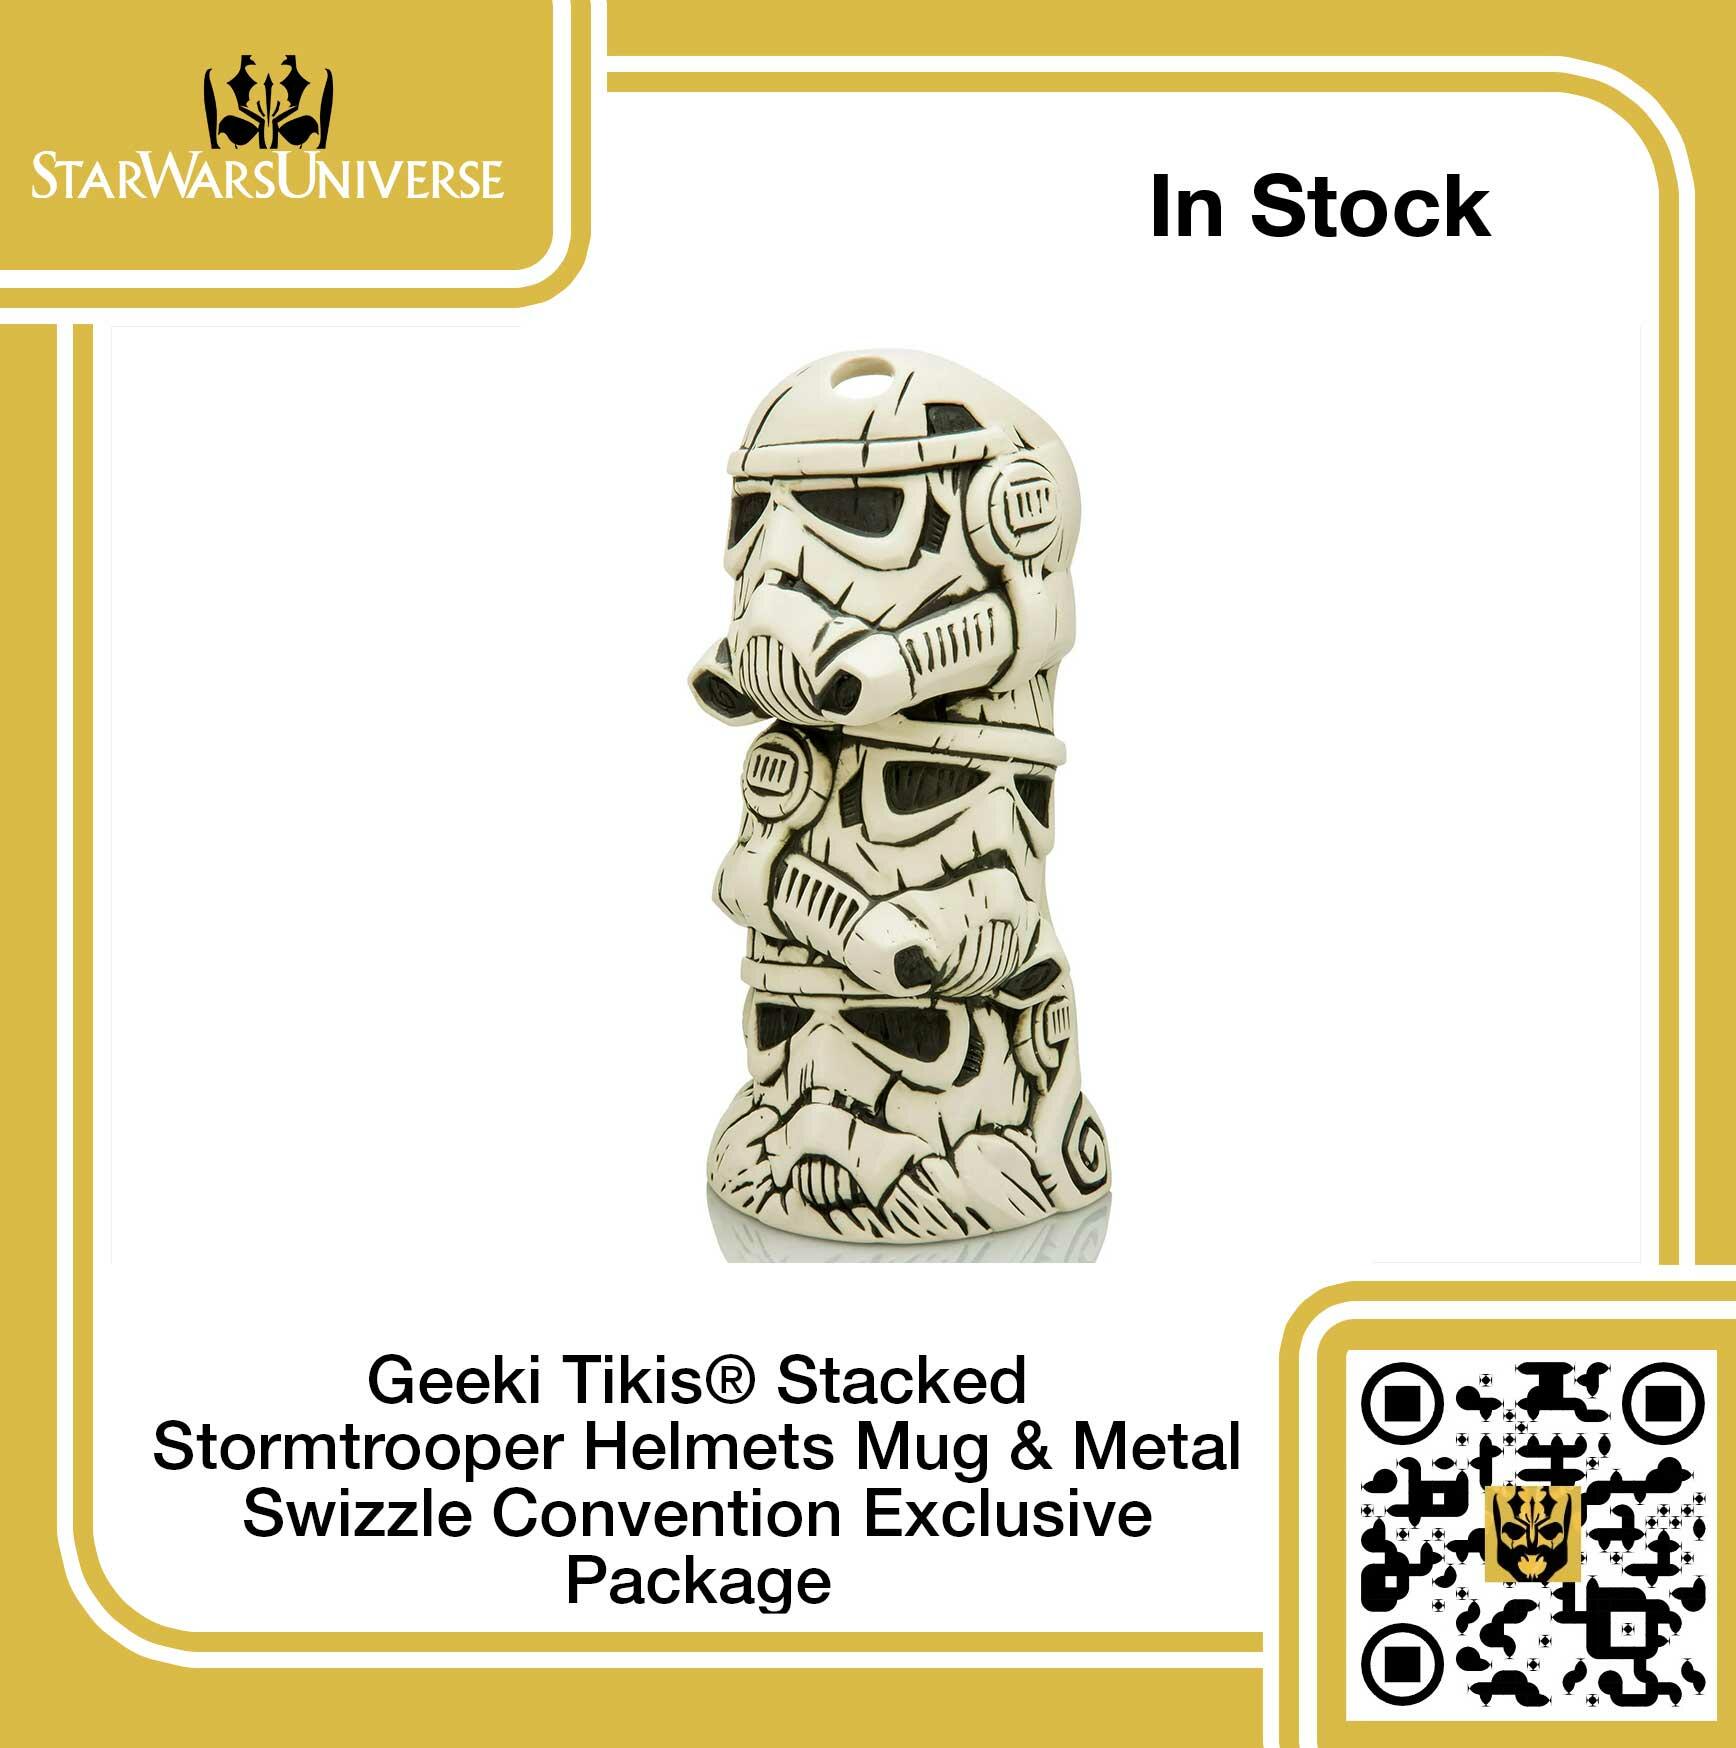 Geeki Tikis - Stacked Stormtrooper Helmets